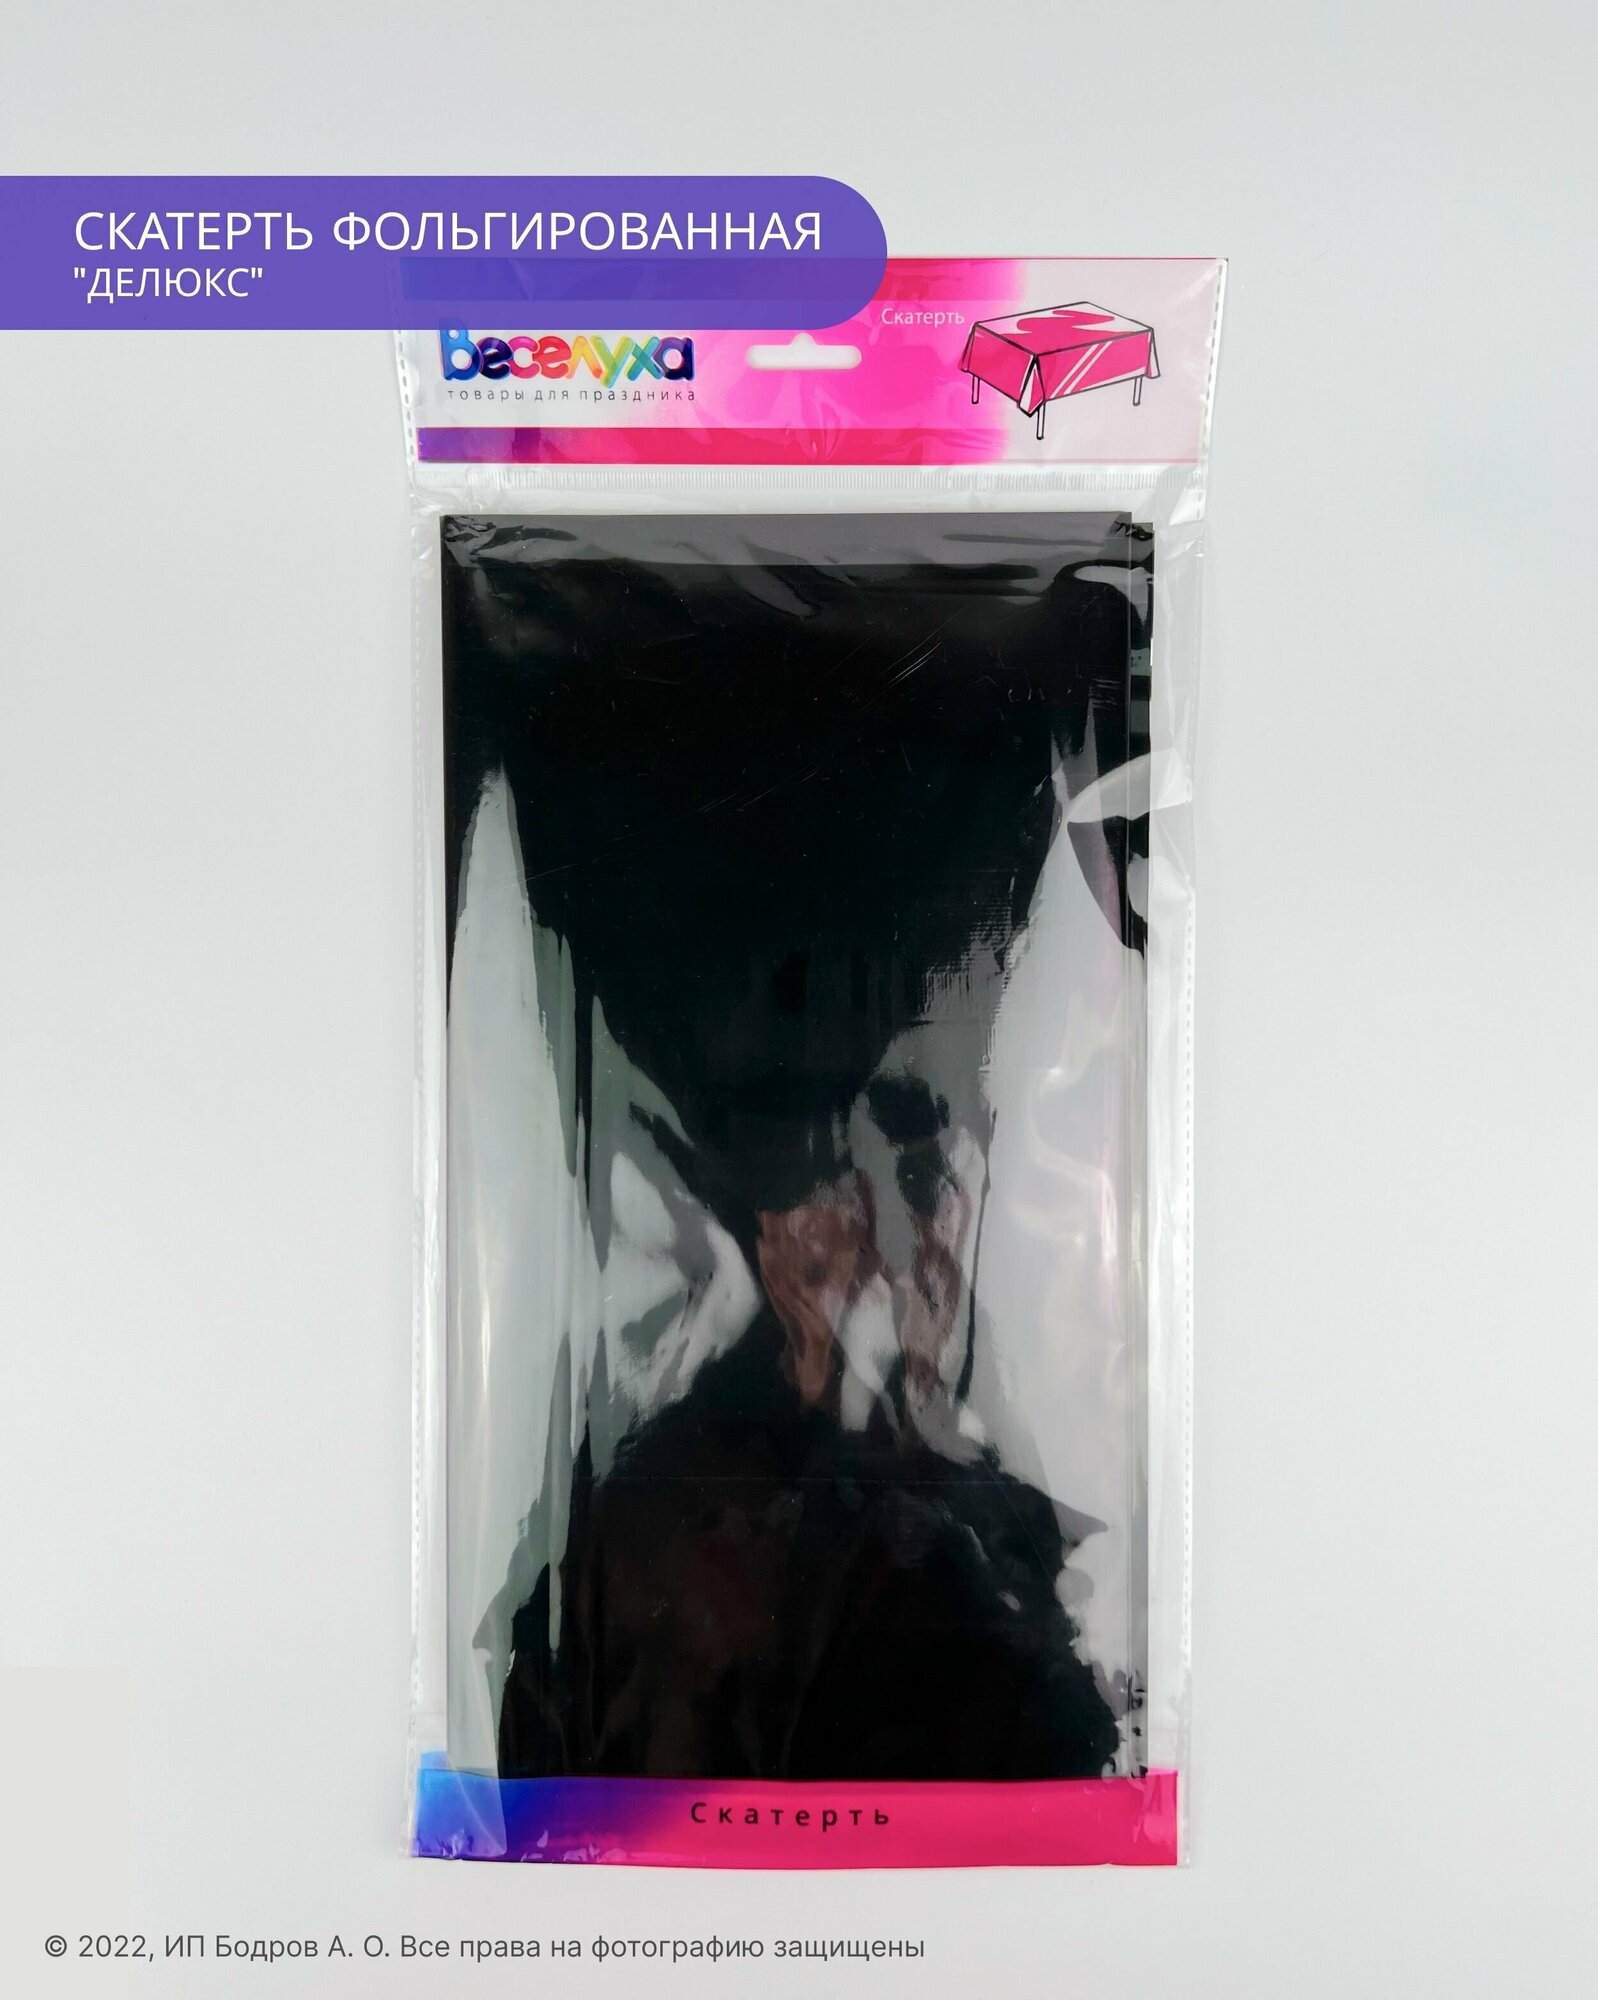 Скатерть одноразовая фольгированная черная для праздника на стол "Делюкс", 274х137 см - фотография № 1